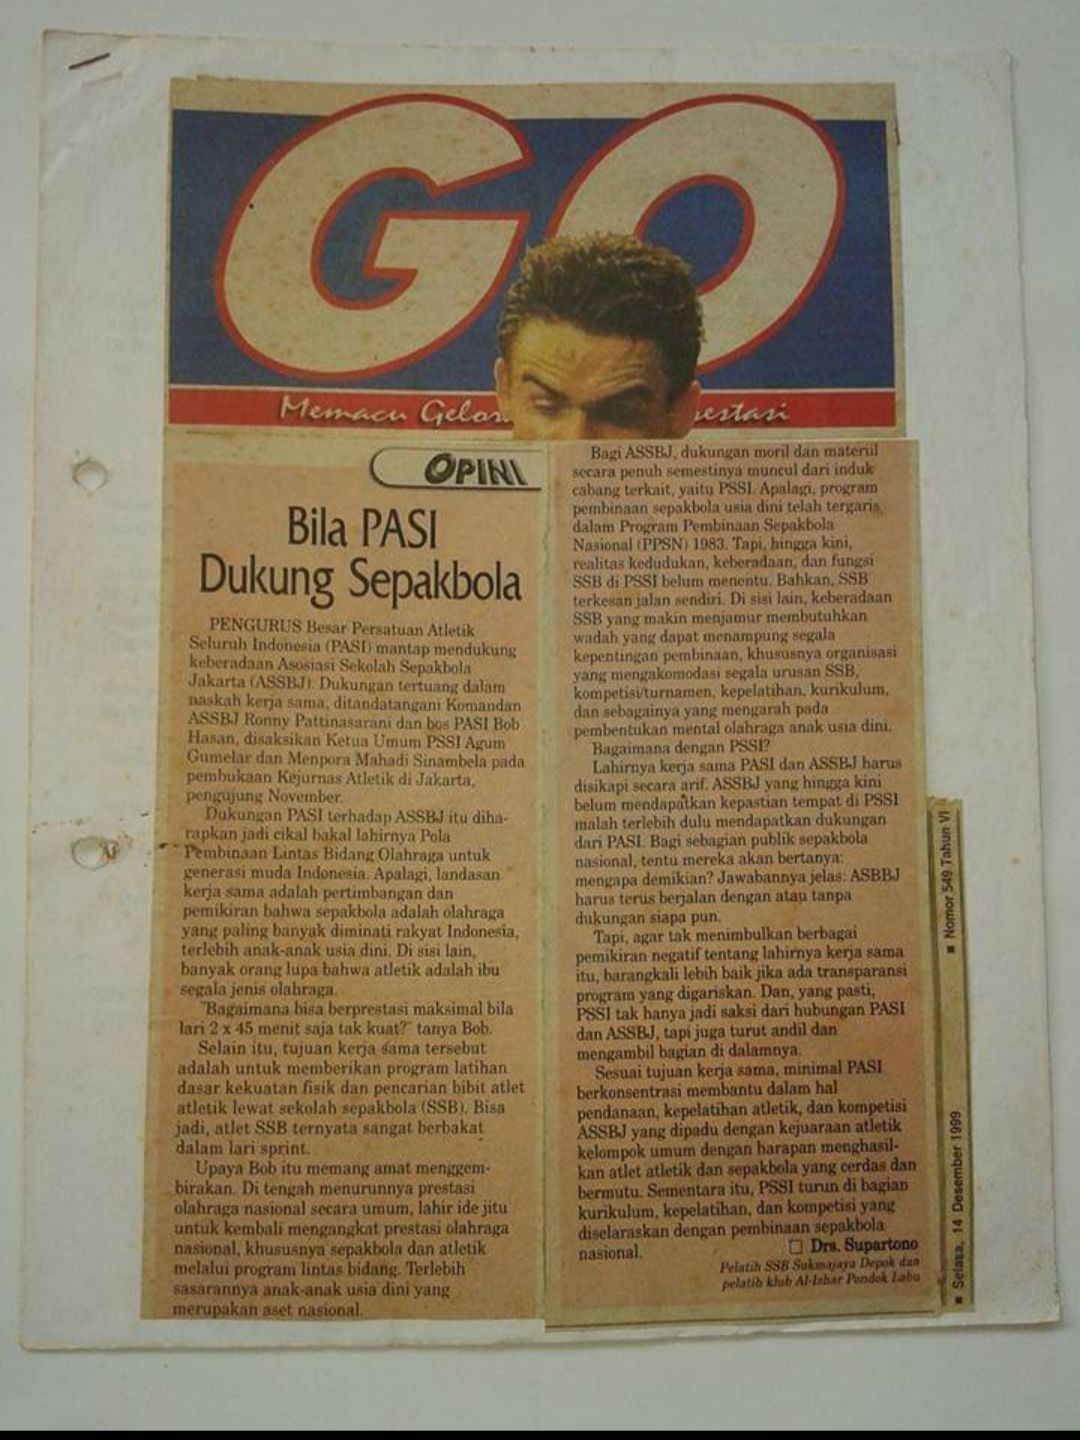 Inilah artikel menyoal dukungan PB PASI yang saya tulis di Tabloid Olah raga GO, Selasa (14/12/1999). Sumber: doc. Supartono JW